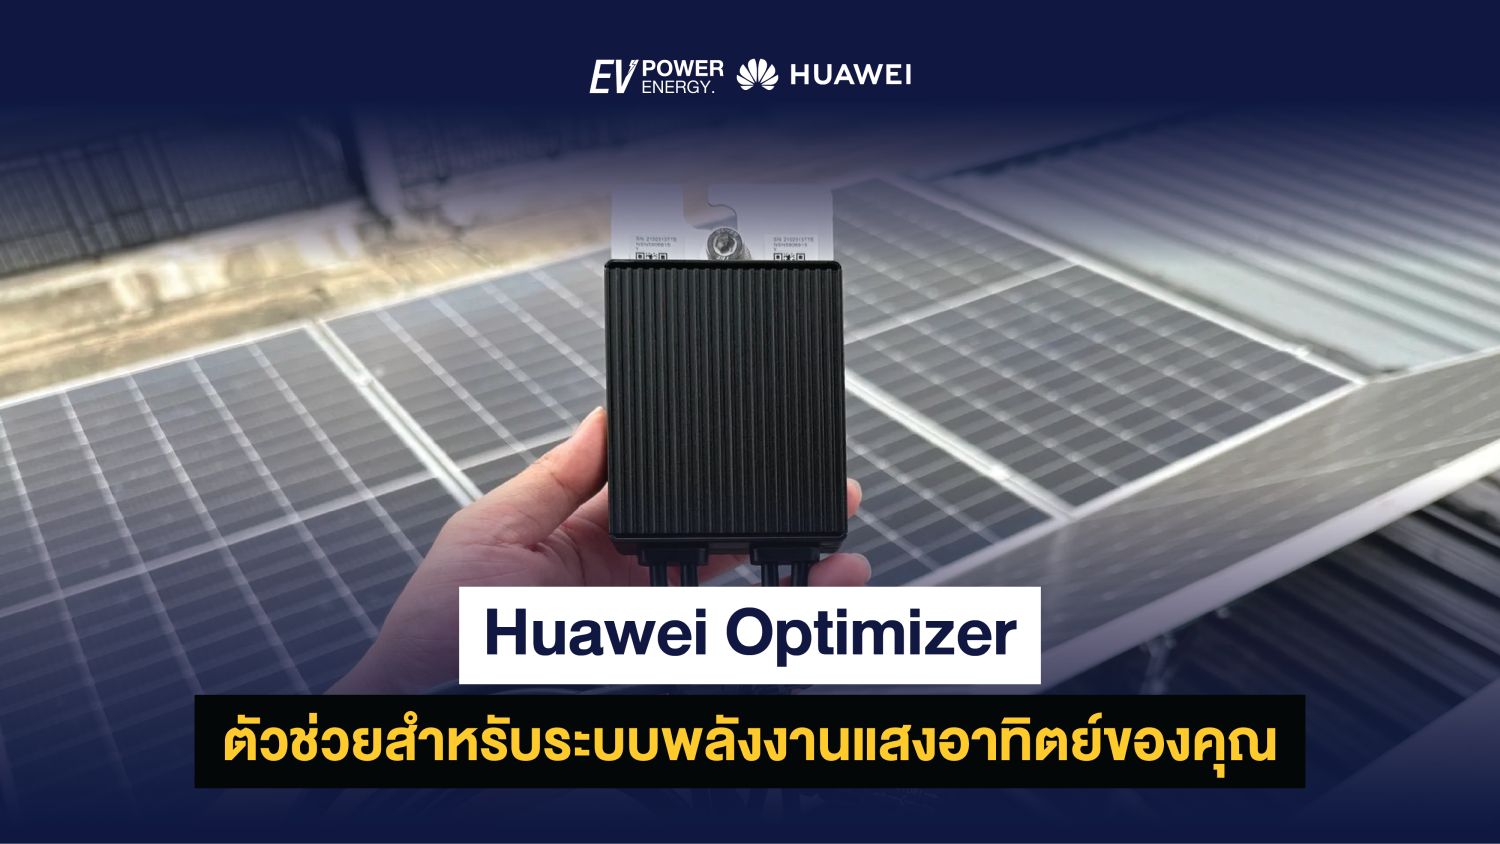 Huawei Optimizer ตัวช่วยสำหรับระบบพลังงานแสงอาทิตย์ของคุณ